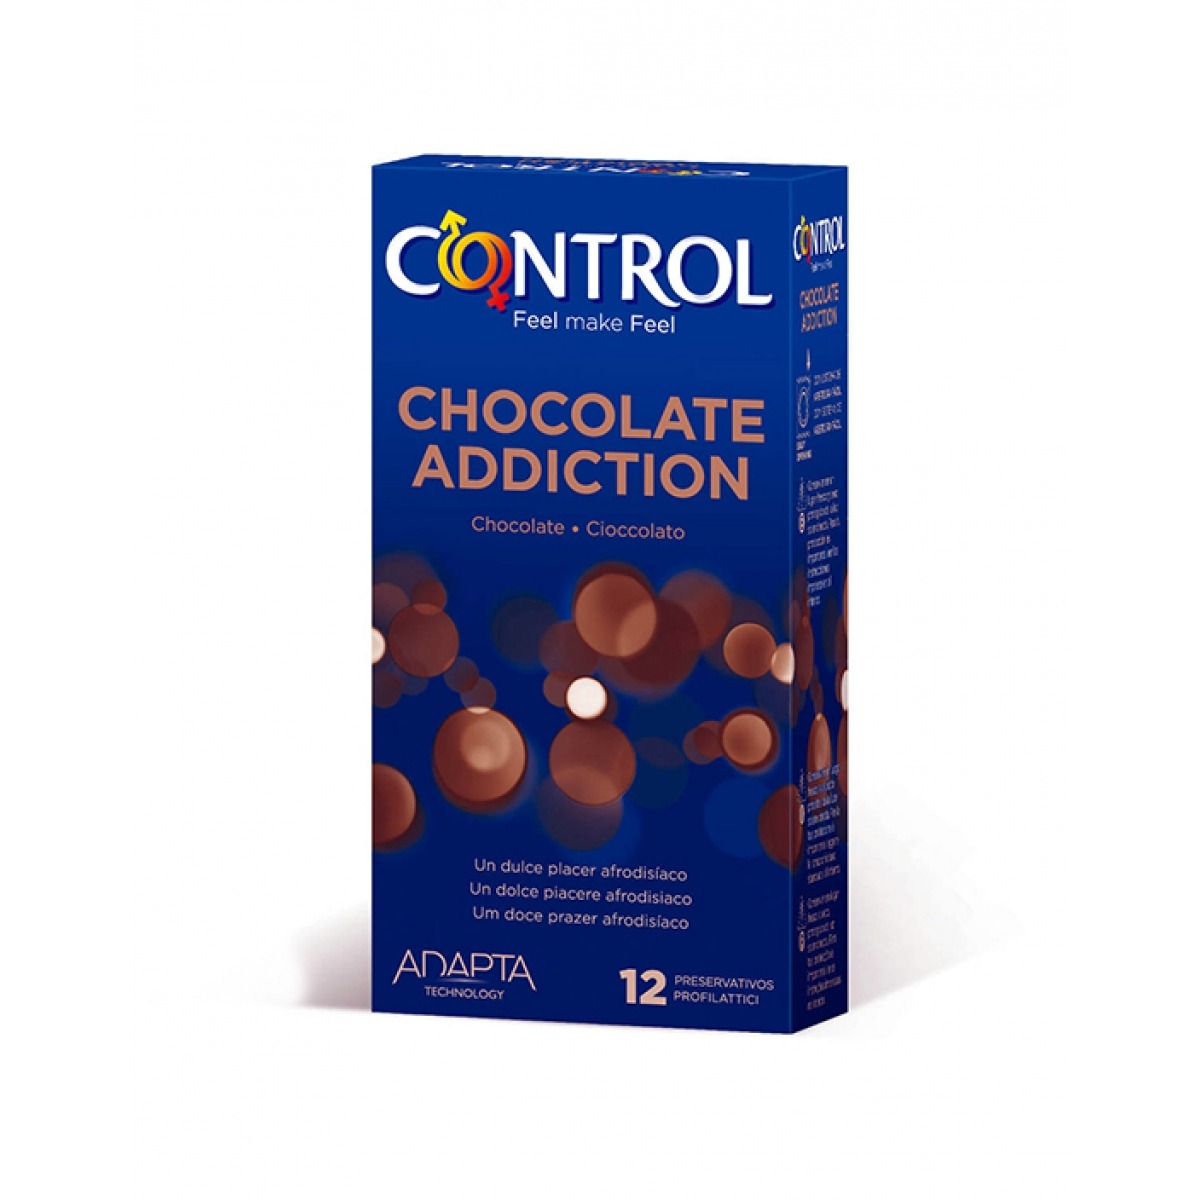 CONTROL CHOCOLATE ADDICTION PRESERVATIVOS 12 UNIDADES.